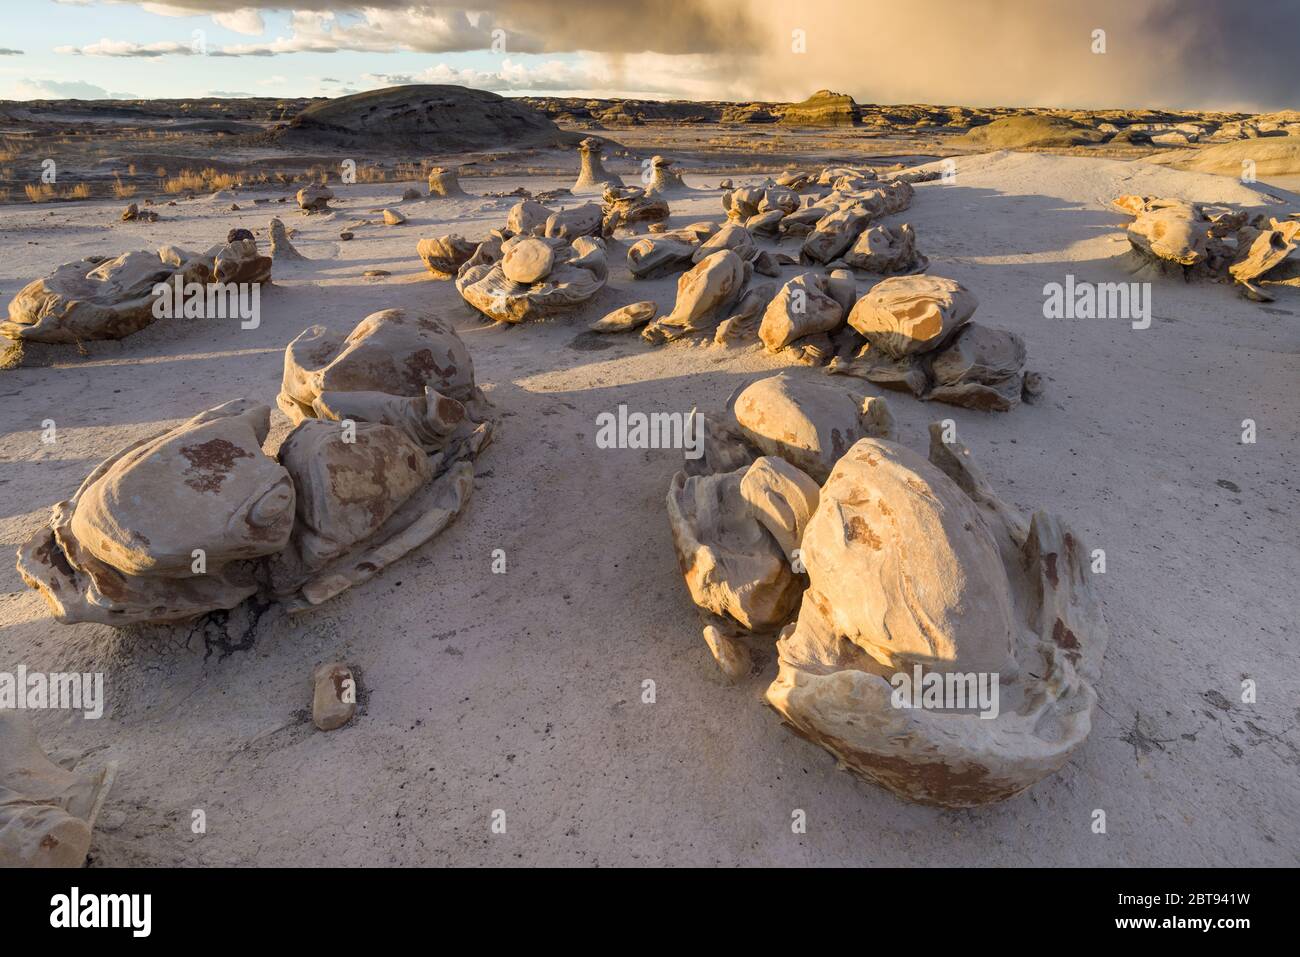 Bisti o de-Na-Zin Wilderness Area o tierras de badlands que muestran formaciones rocosas únicas formadas por la erosión, Nuevo México, EE.UU Foto de stock